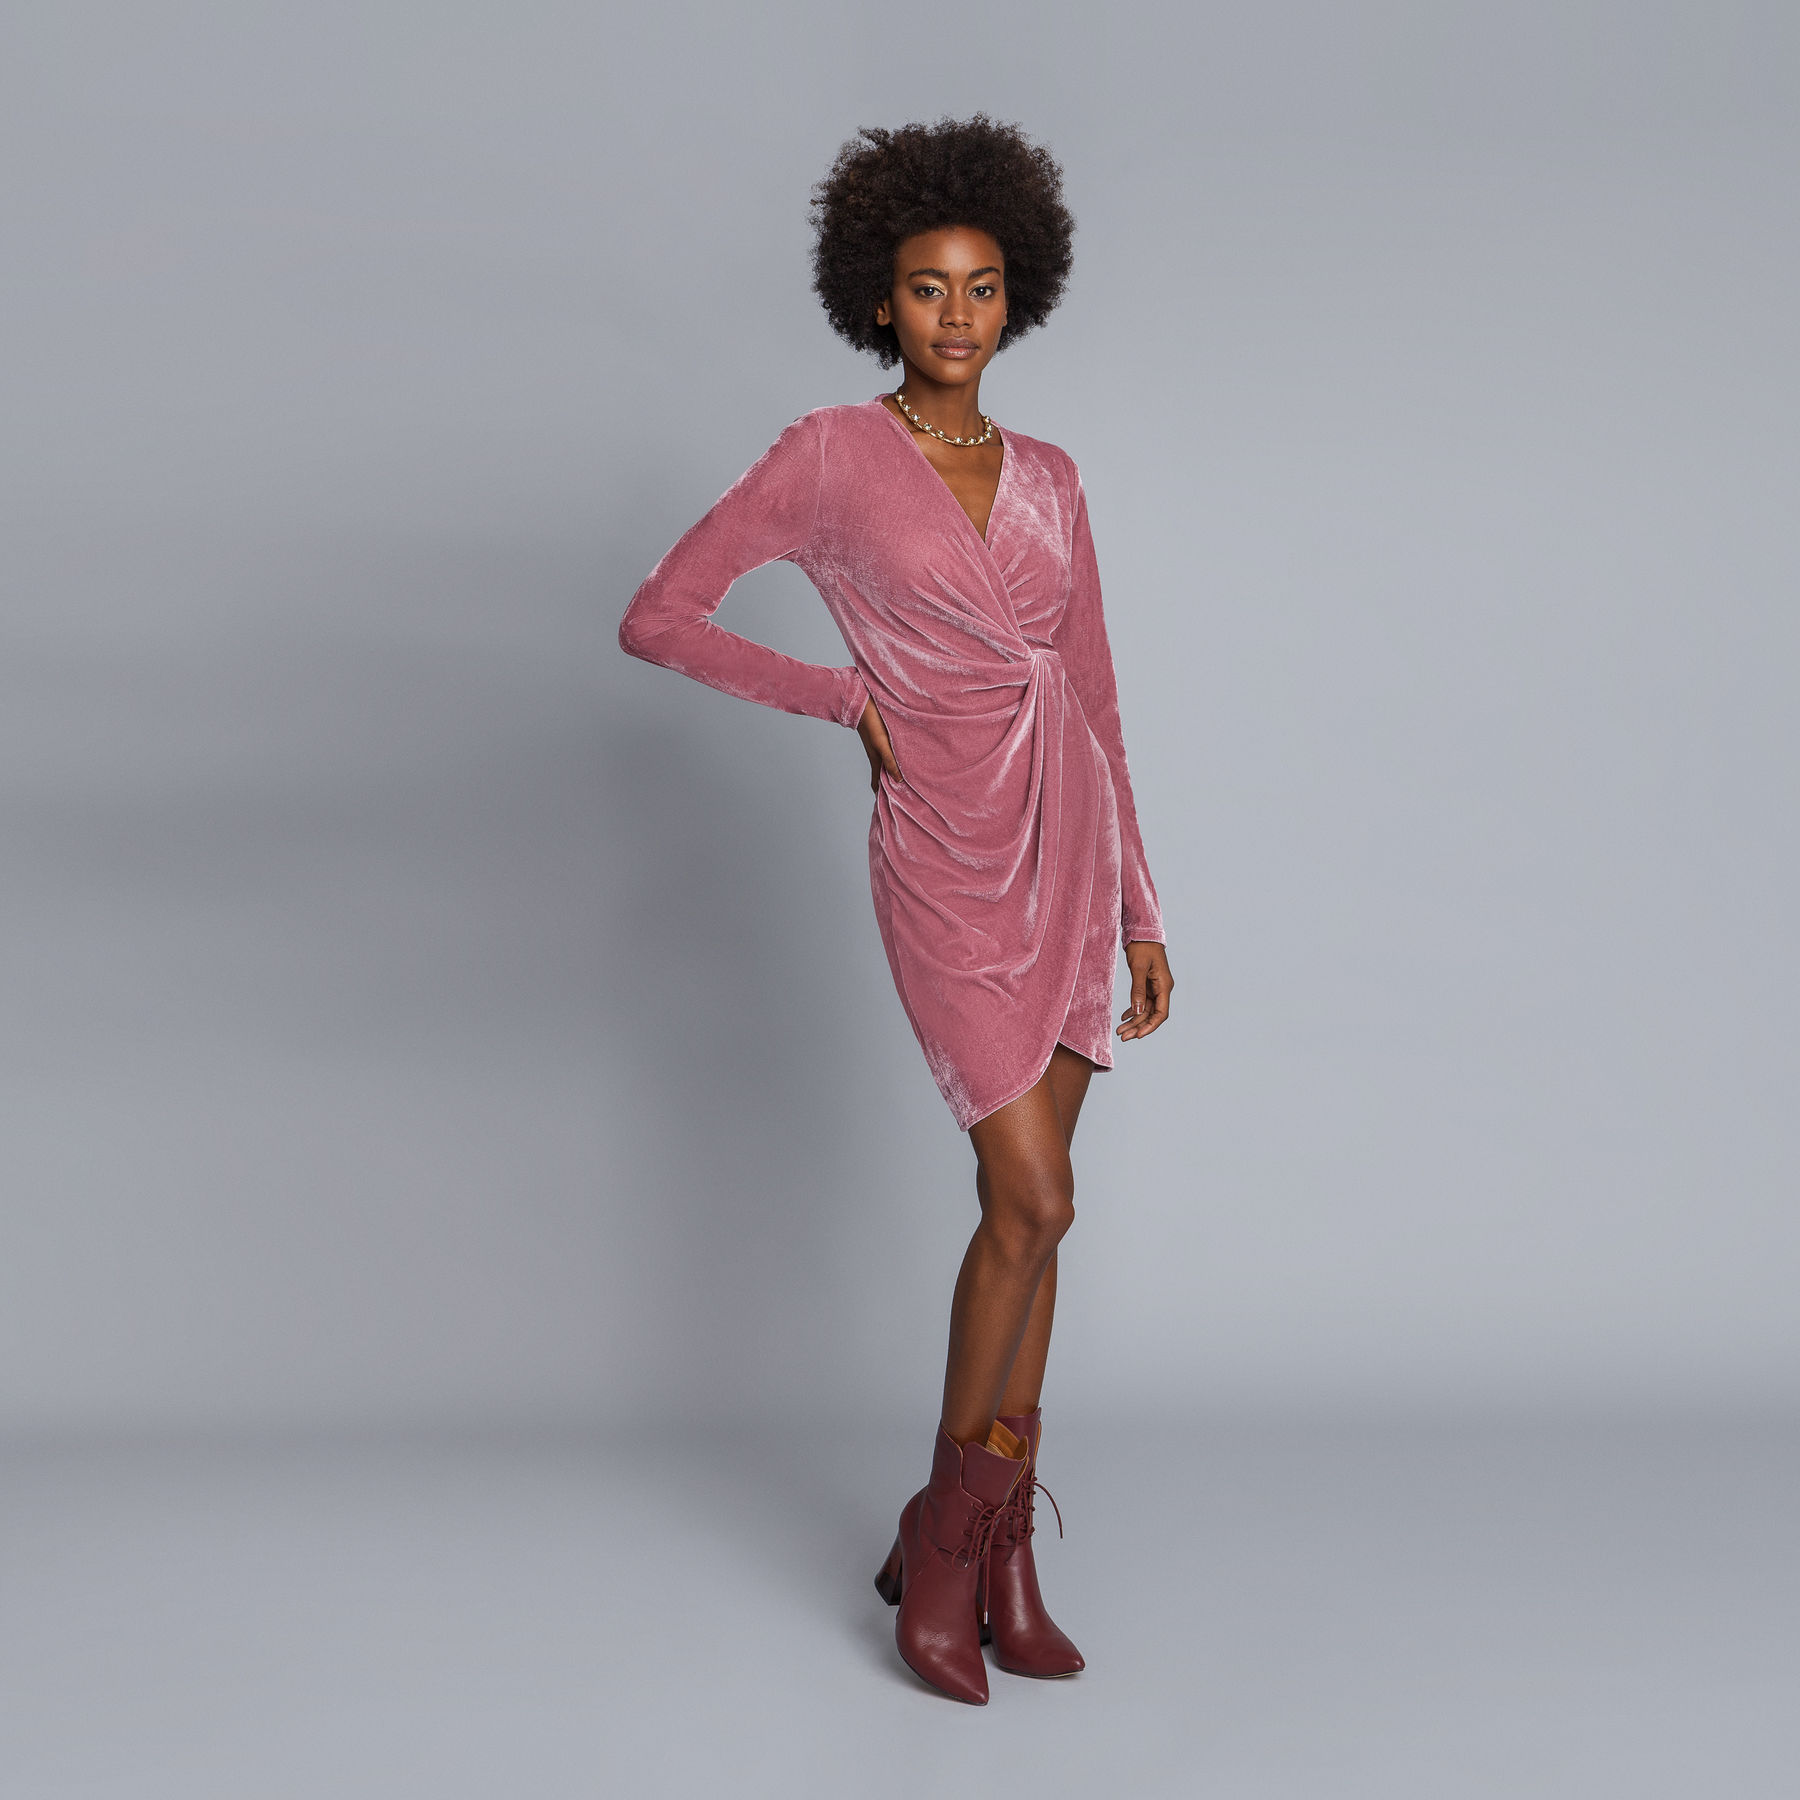 32 inspiraciones de vestidos de oro rosa llenos de elegancia y estilo